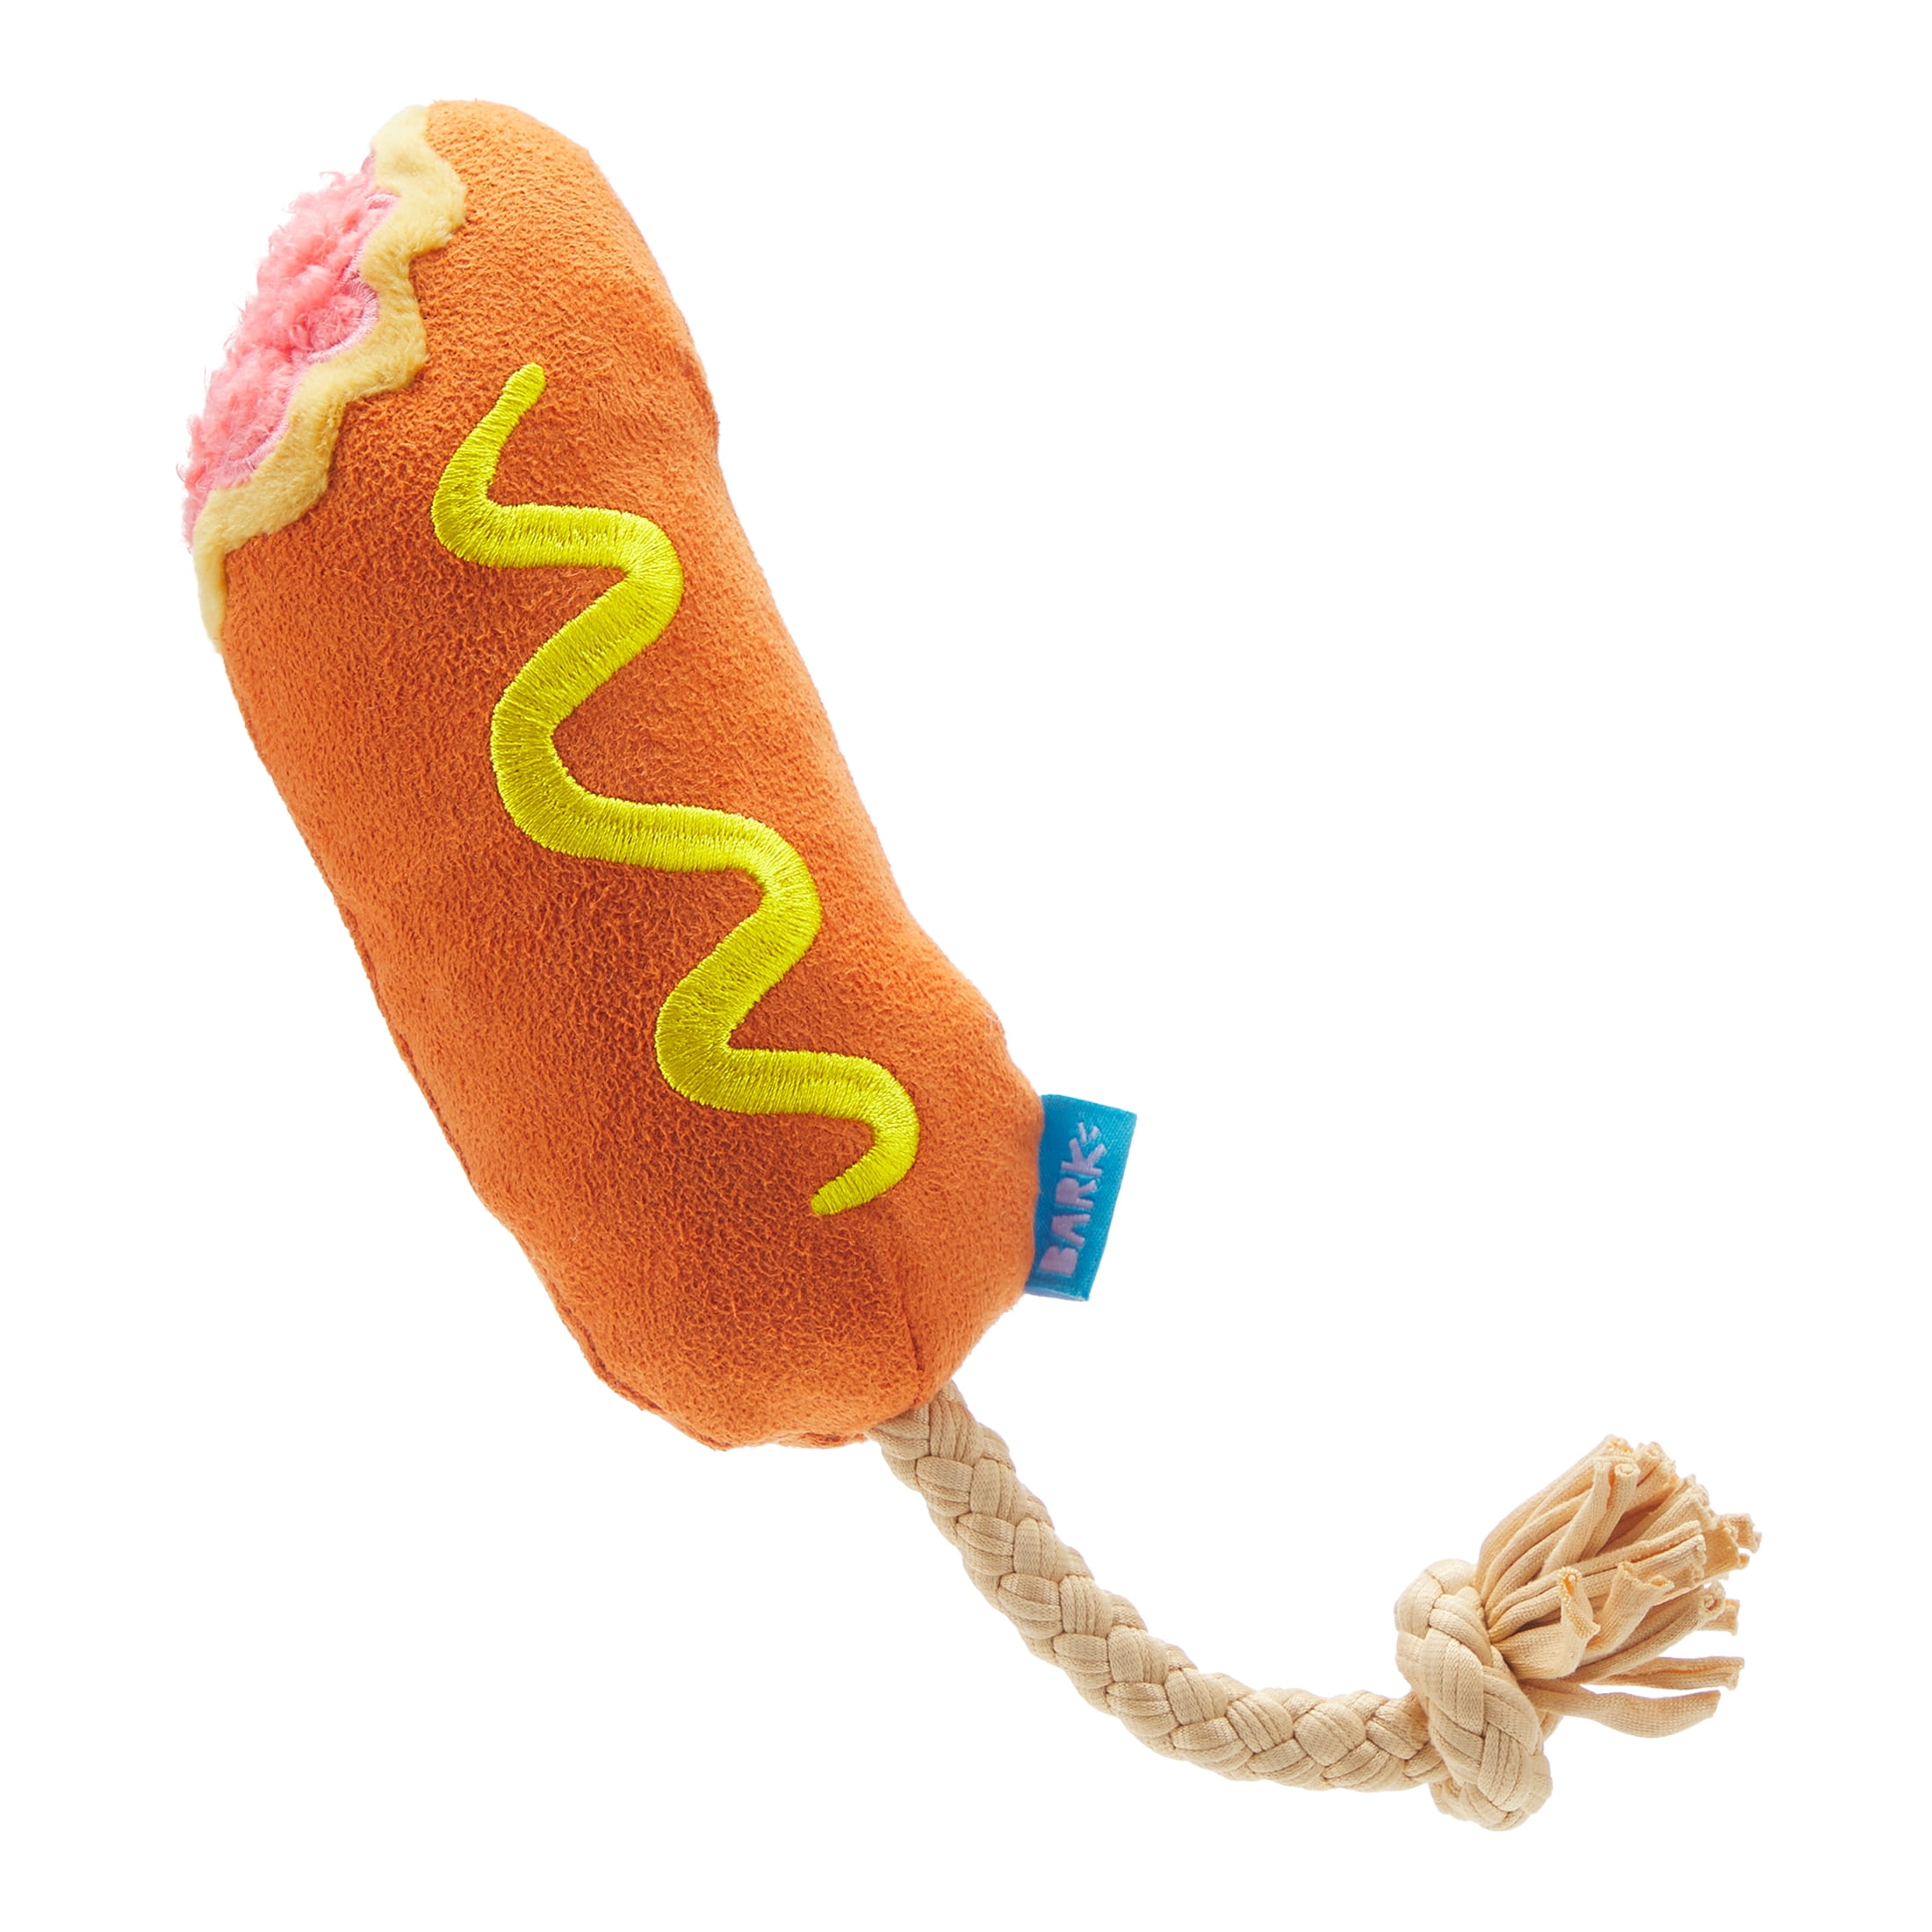 BARK Corn Dog Tug - Yankee Doodle Dog Toy, great for Tug-O-War, XS-M dogs